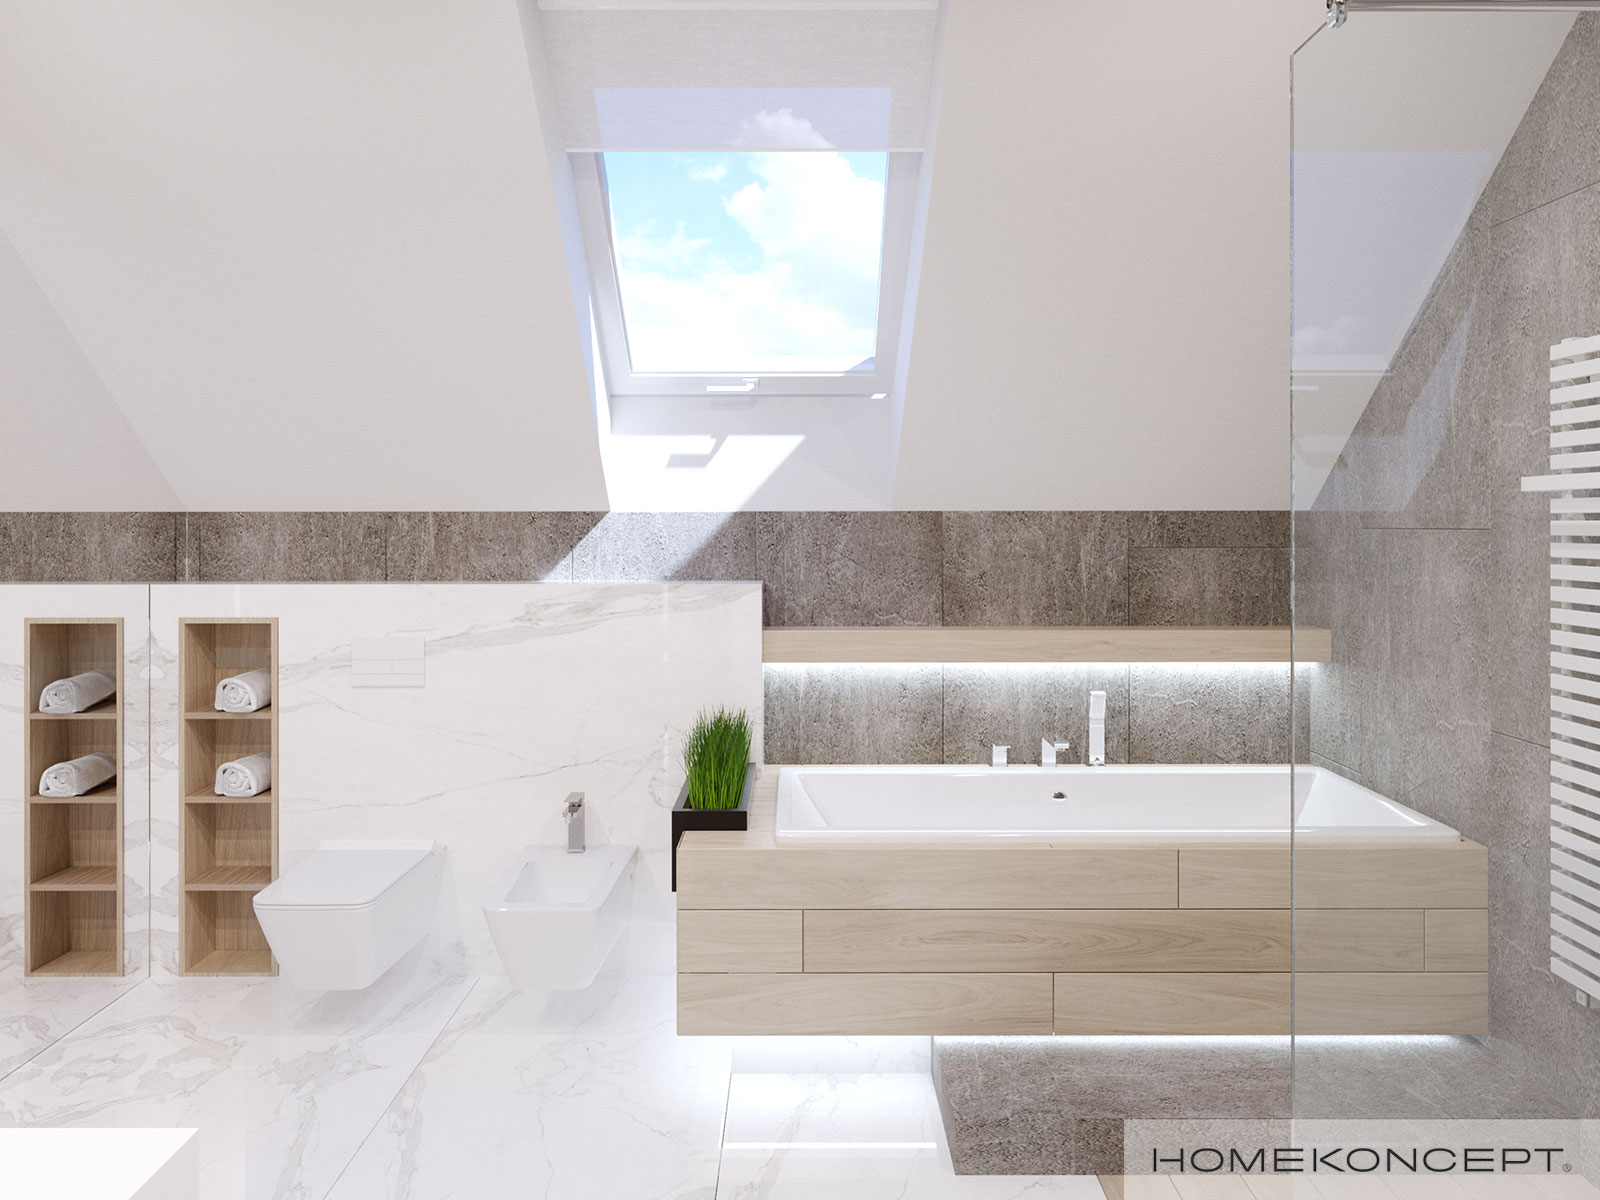 Nowoczesna łazienka z płytką marmurową na poddaszu - gotowy projekt domu HOMEKONCEPT 50